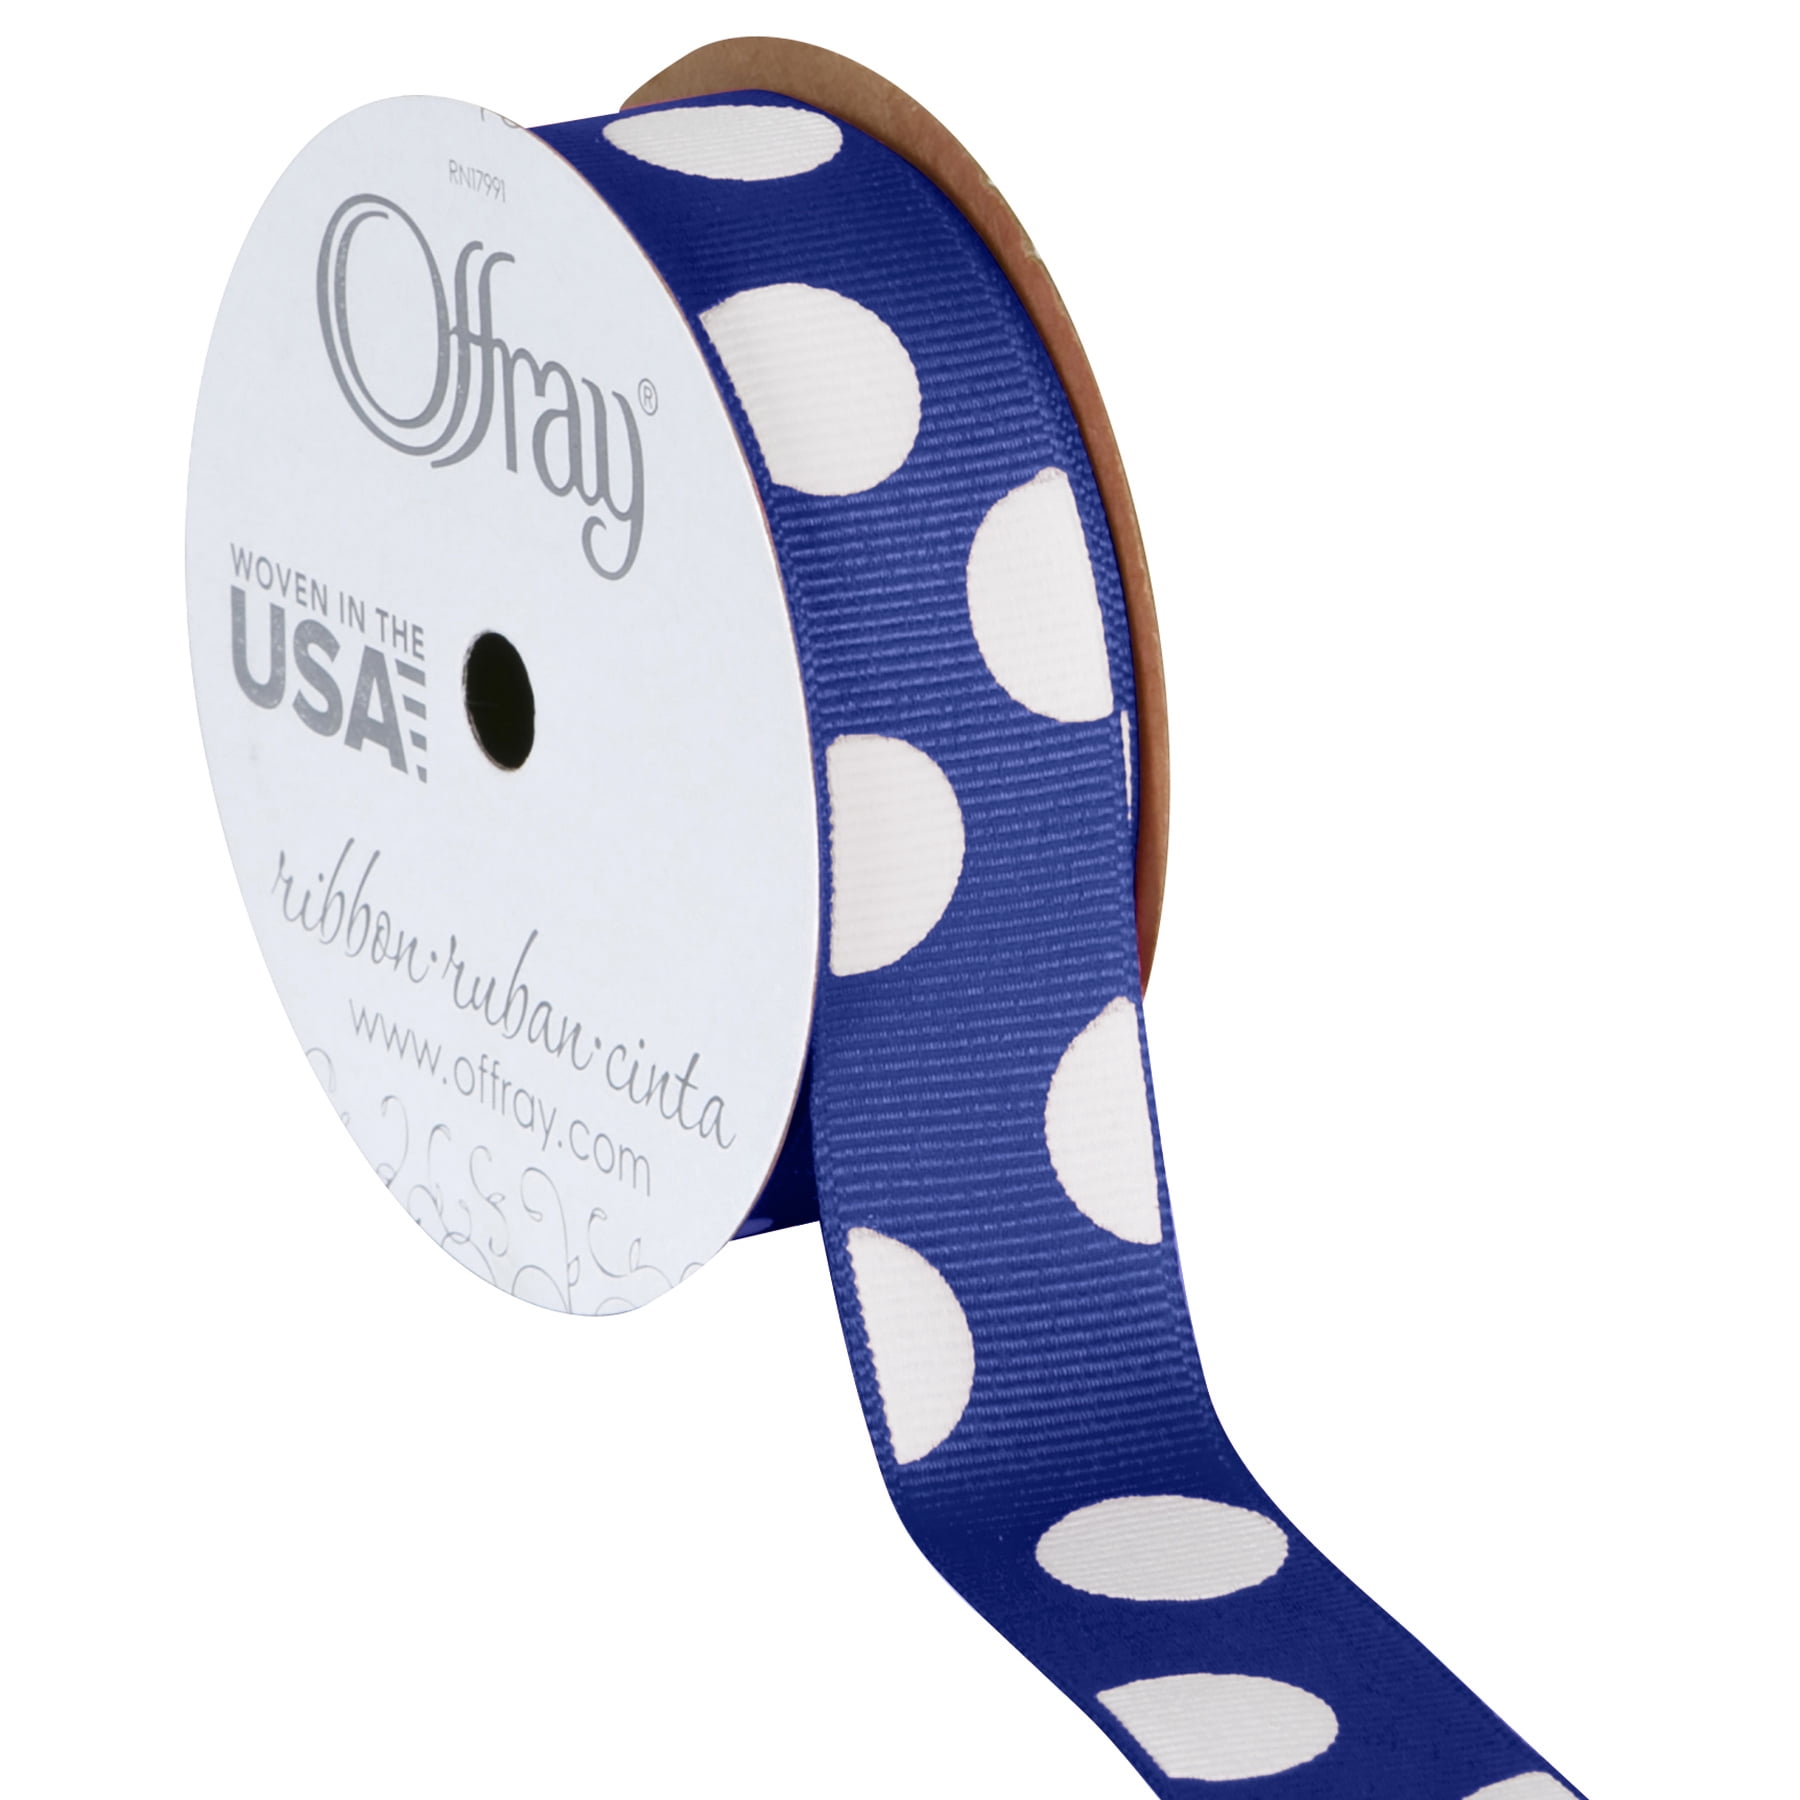 Royal Blue Grosgrain Polka Dot Craft Ribbon Offray 1 1/2-Inch x 9-Feet 